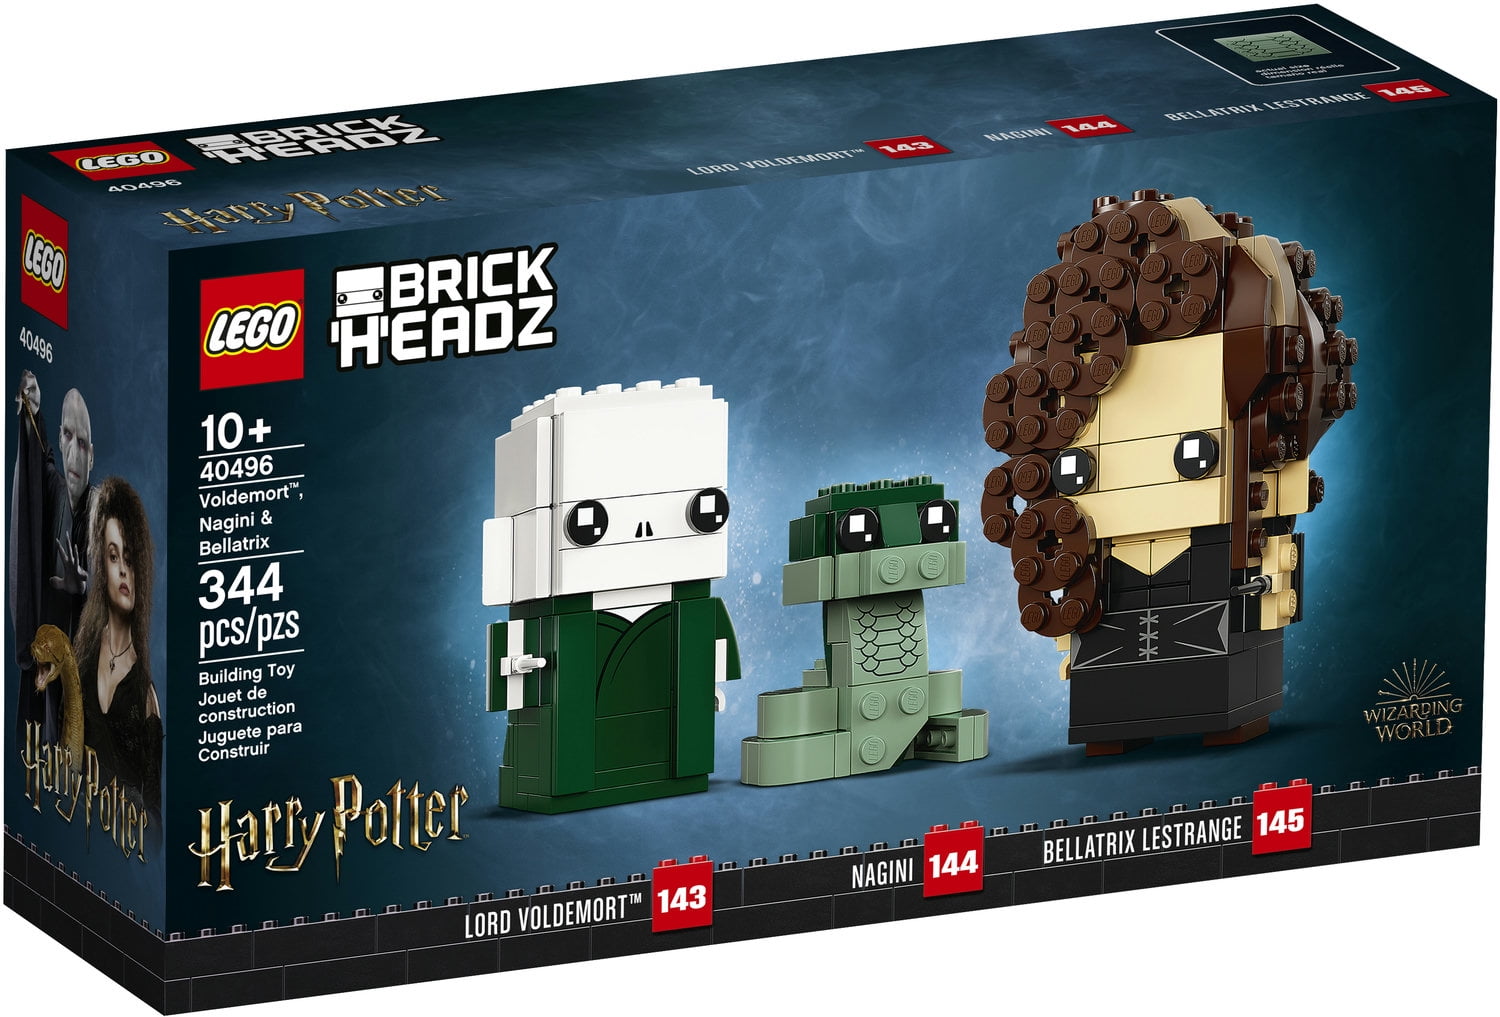 Harry Potter Minifigure on lego bricks Custom Lord Voldemort 